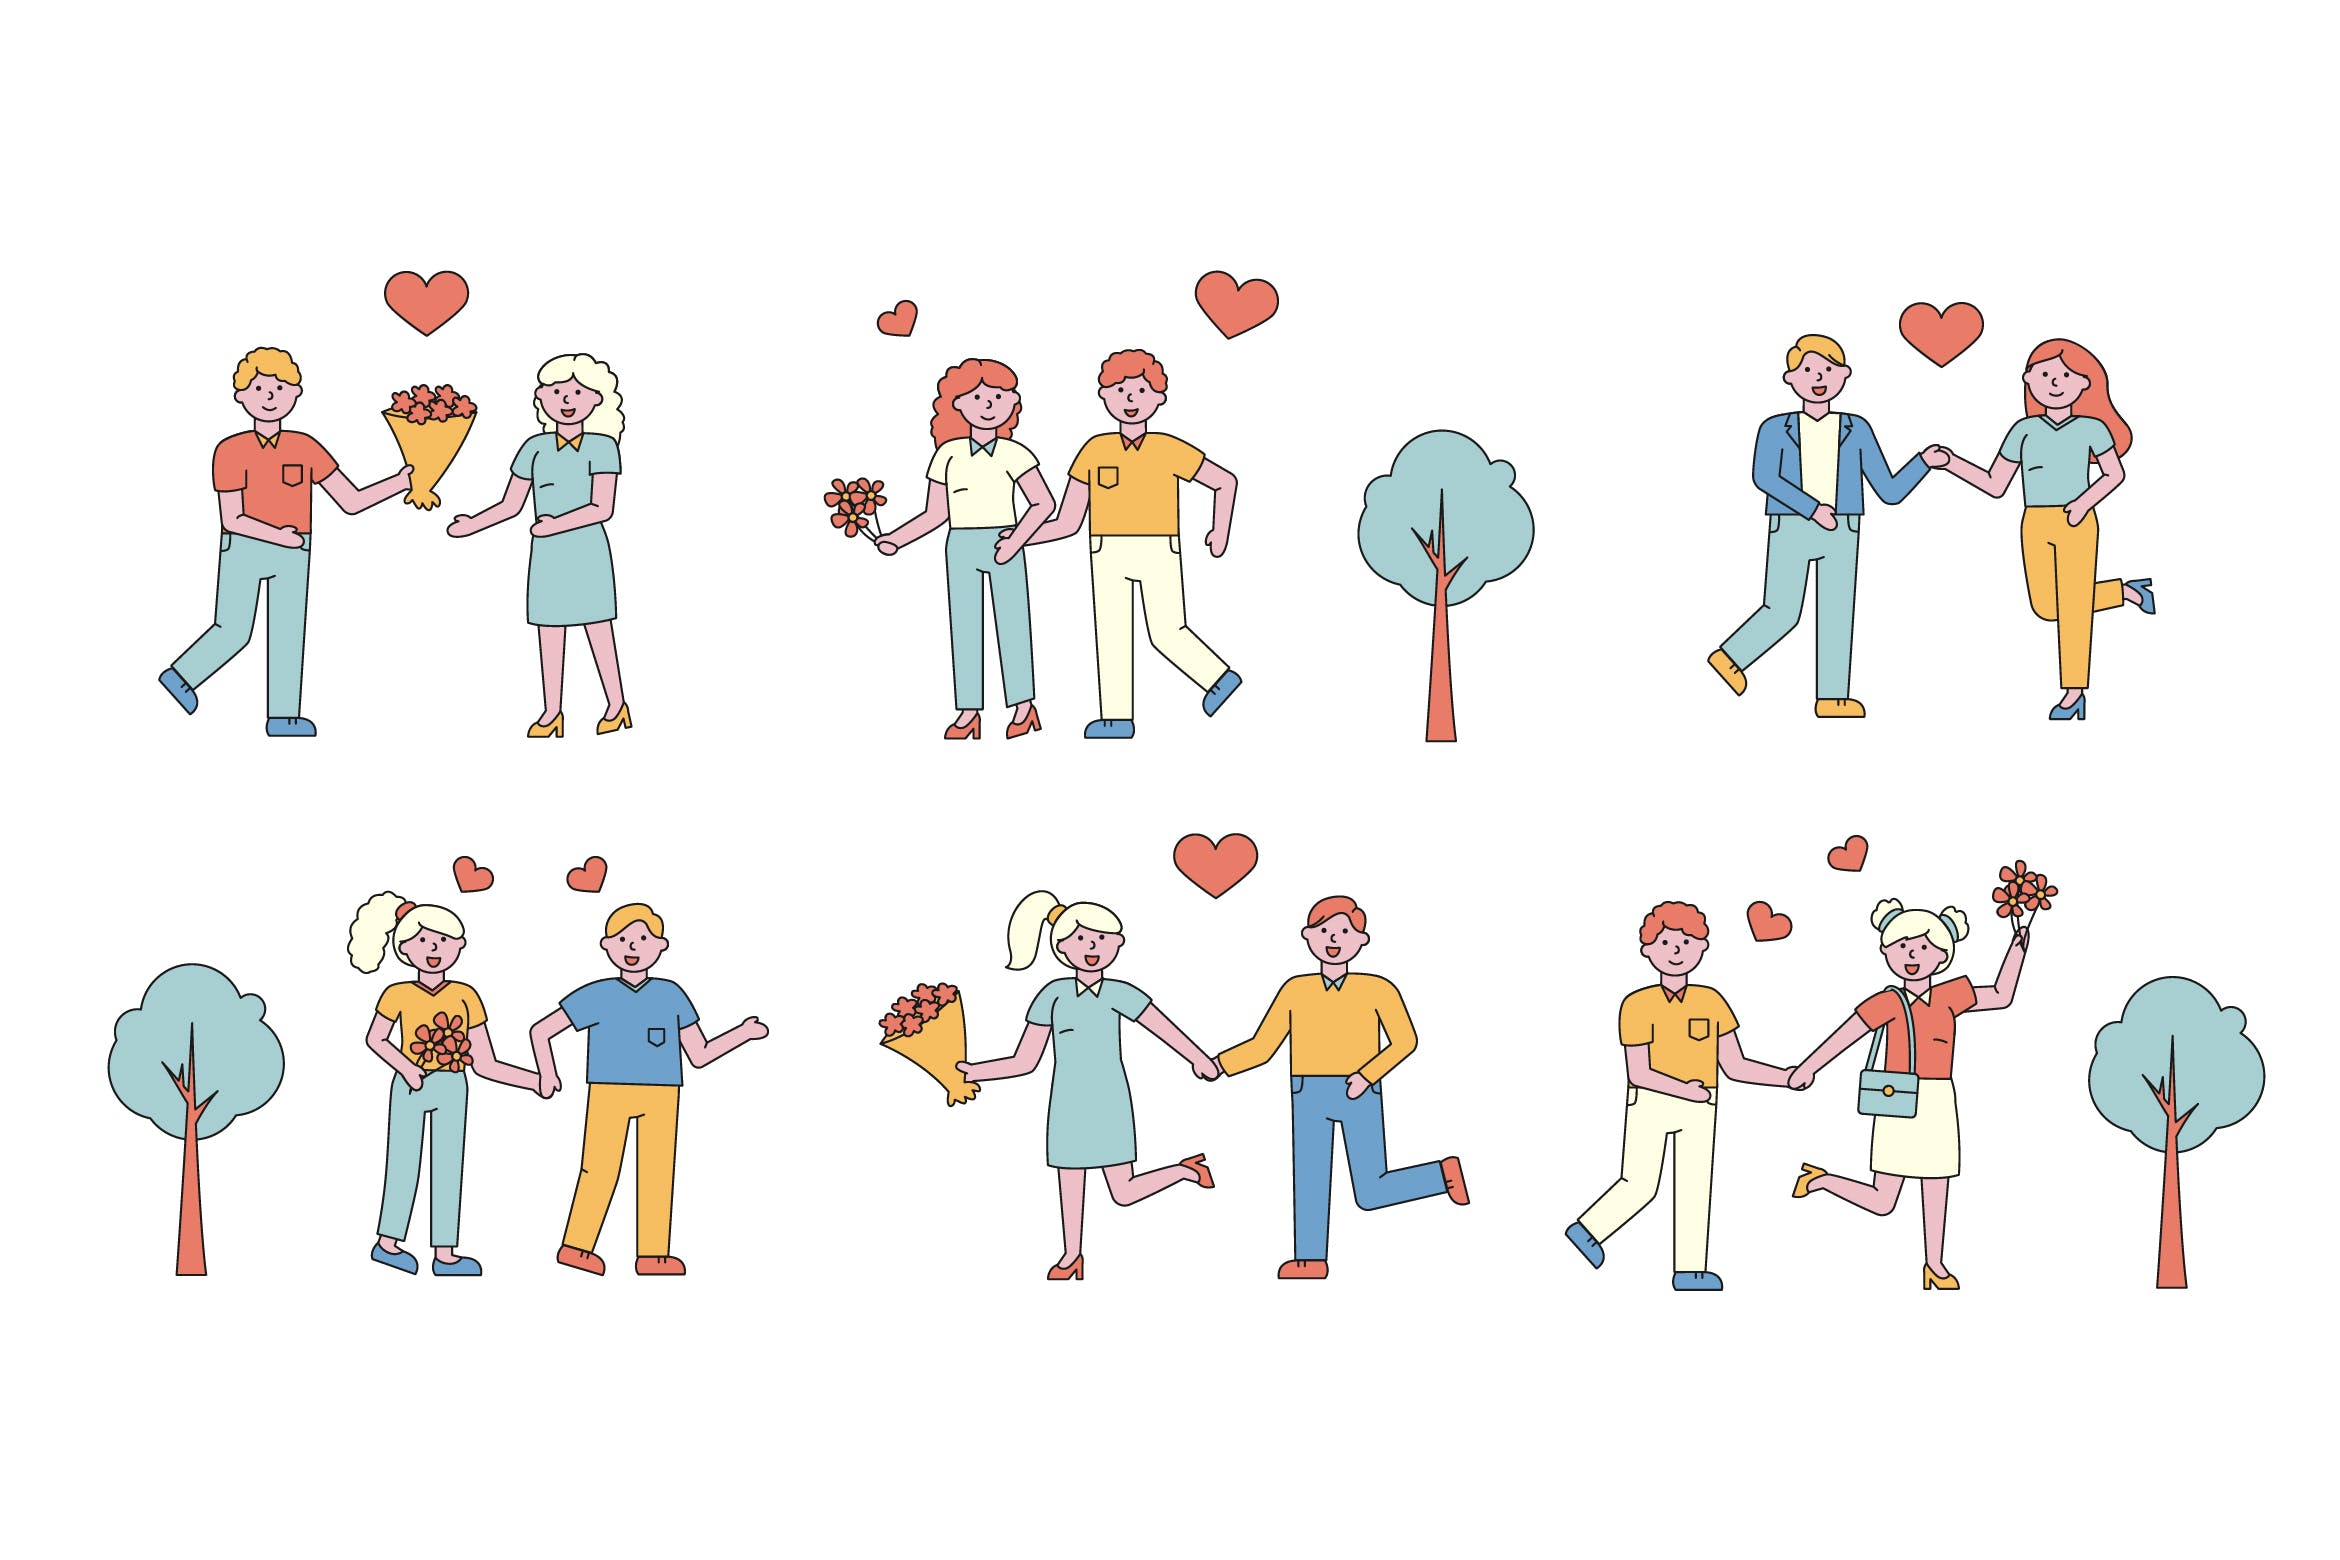 情侣爱情主题人物形象线条艺术矢量插画第一素材精选素材 Romantic Lineart People Character Collection插图